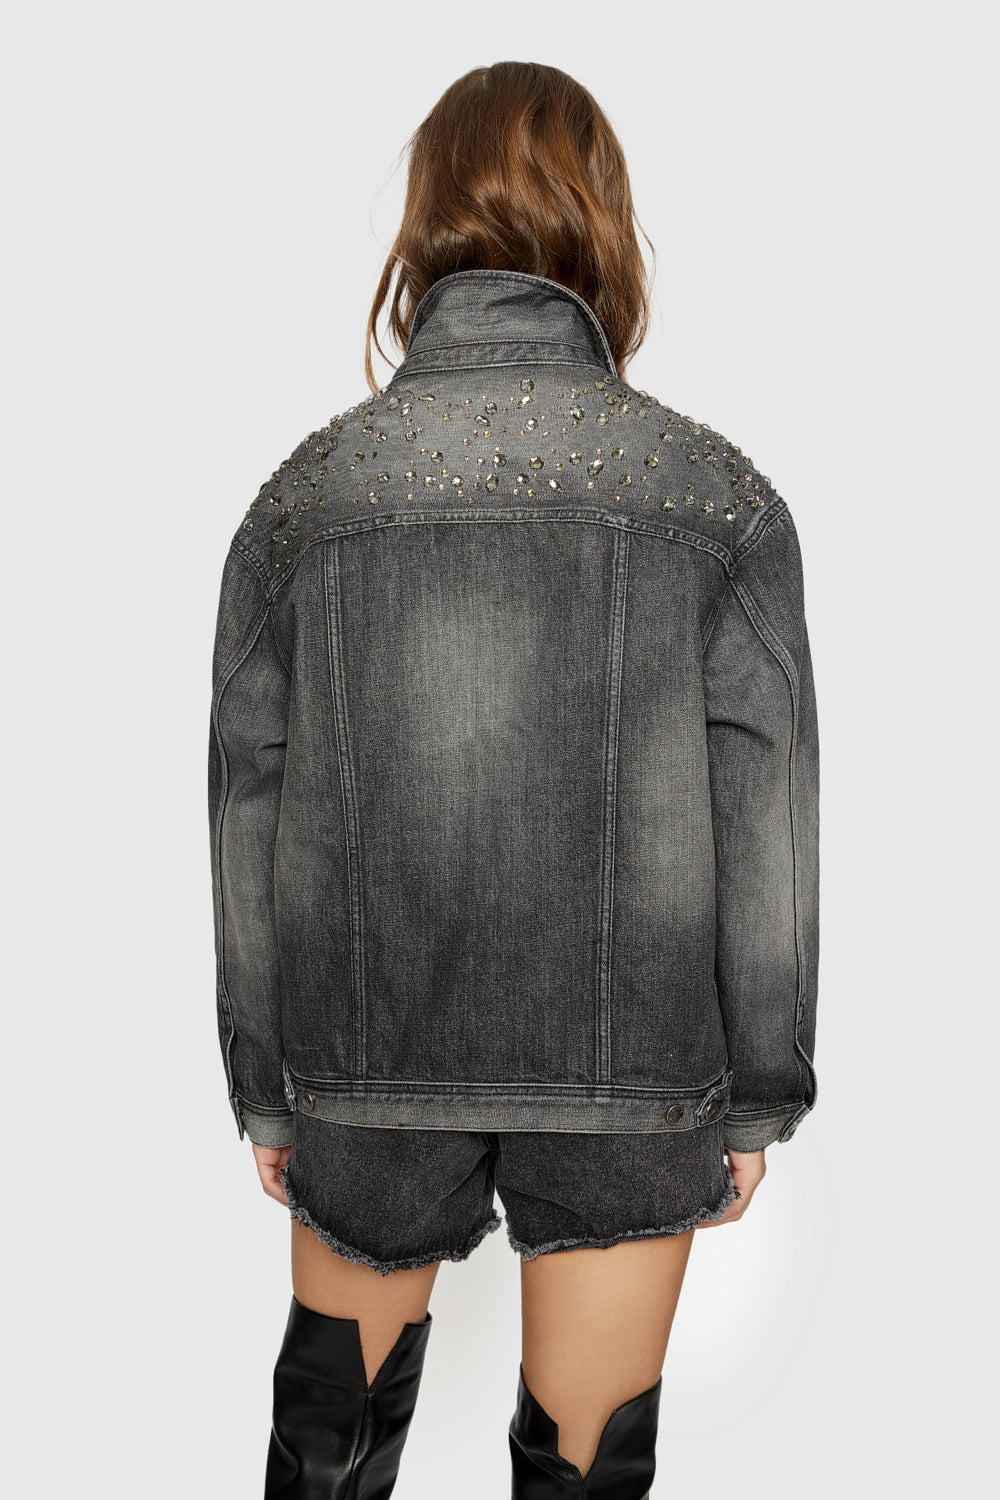 crystal-embellished denim jacket